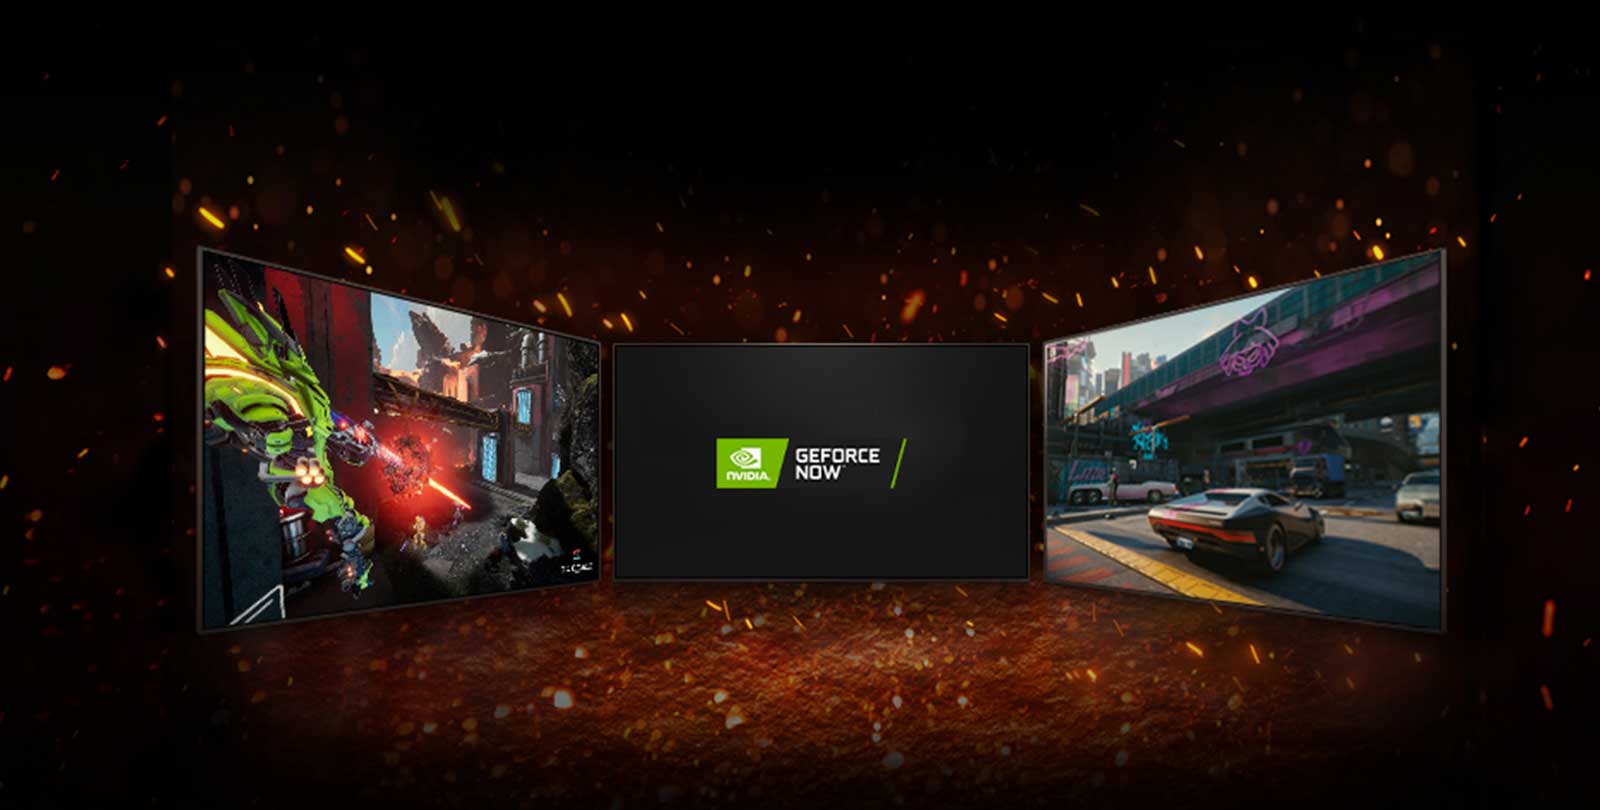 На изображении представлены три телевизора. В центре экрана изображены два логотипа, расположенные по диагонали: логотип NVIDIA GeFORCE NOW. Слева на телевизоре изображена игра Splitgate, справа — Cyberpunk 2077. 